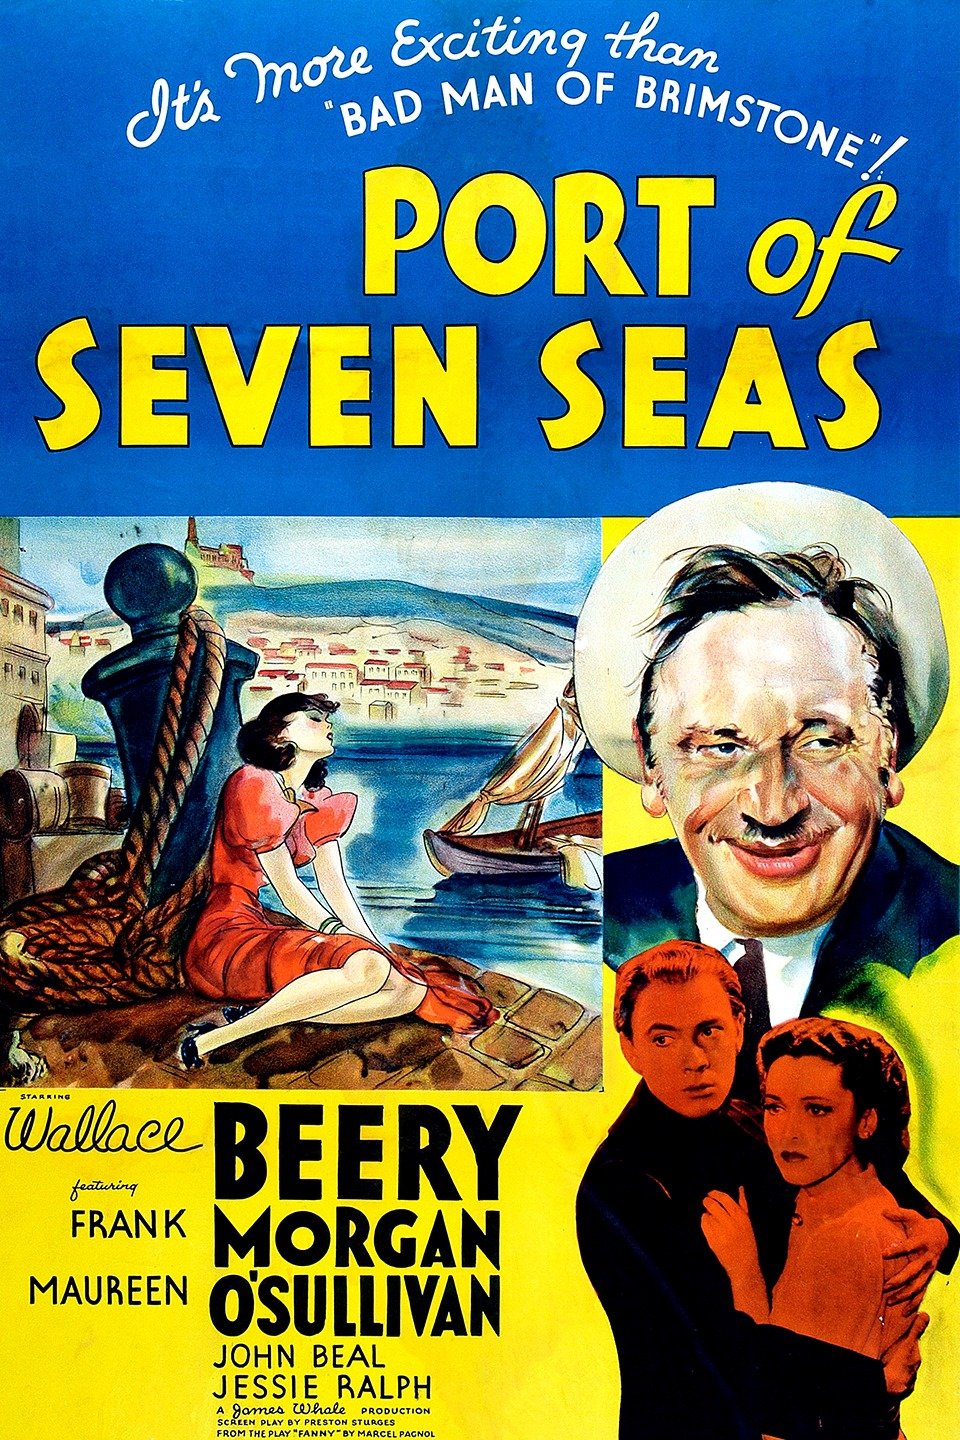  فیلم سینمایی Port of Seven Seas به کارگردانی James Whale